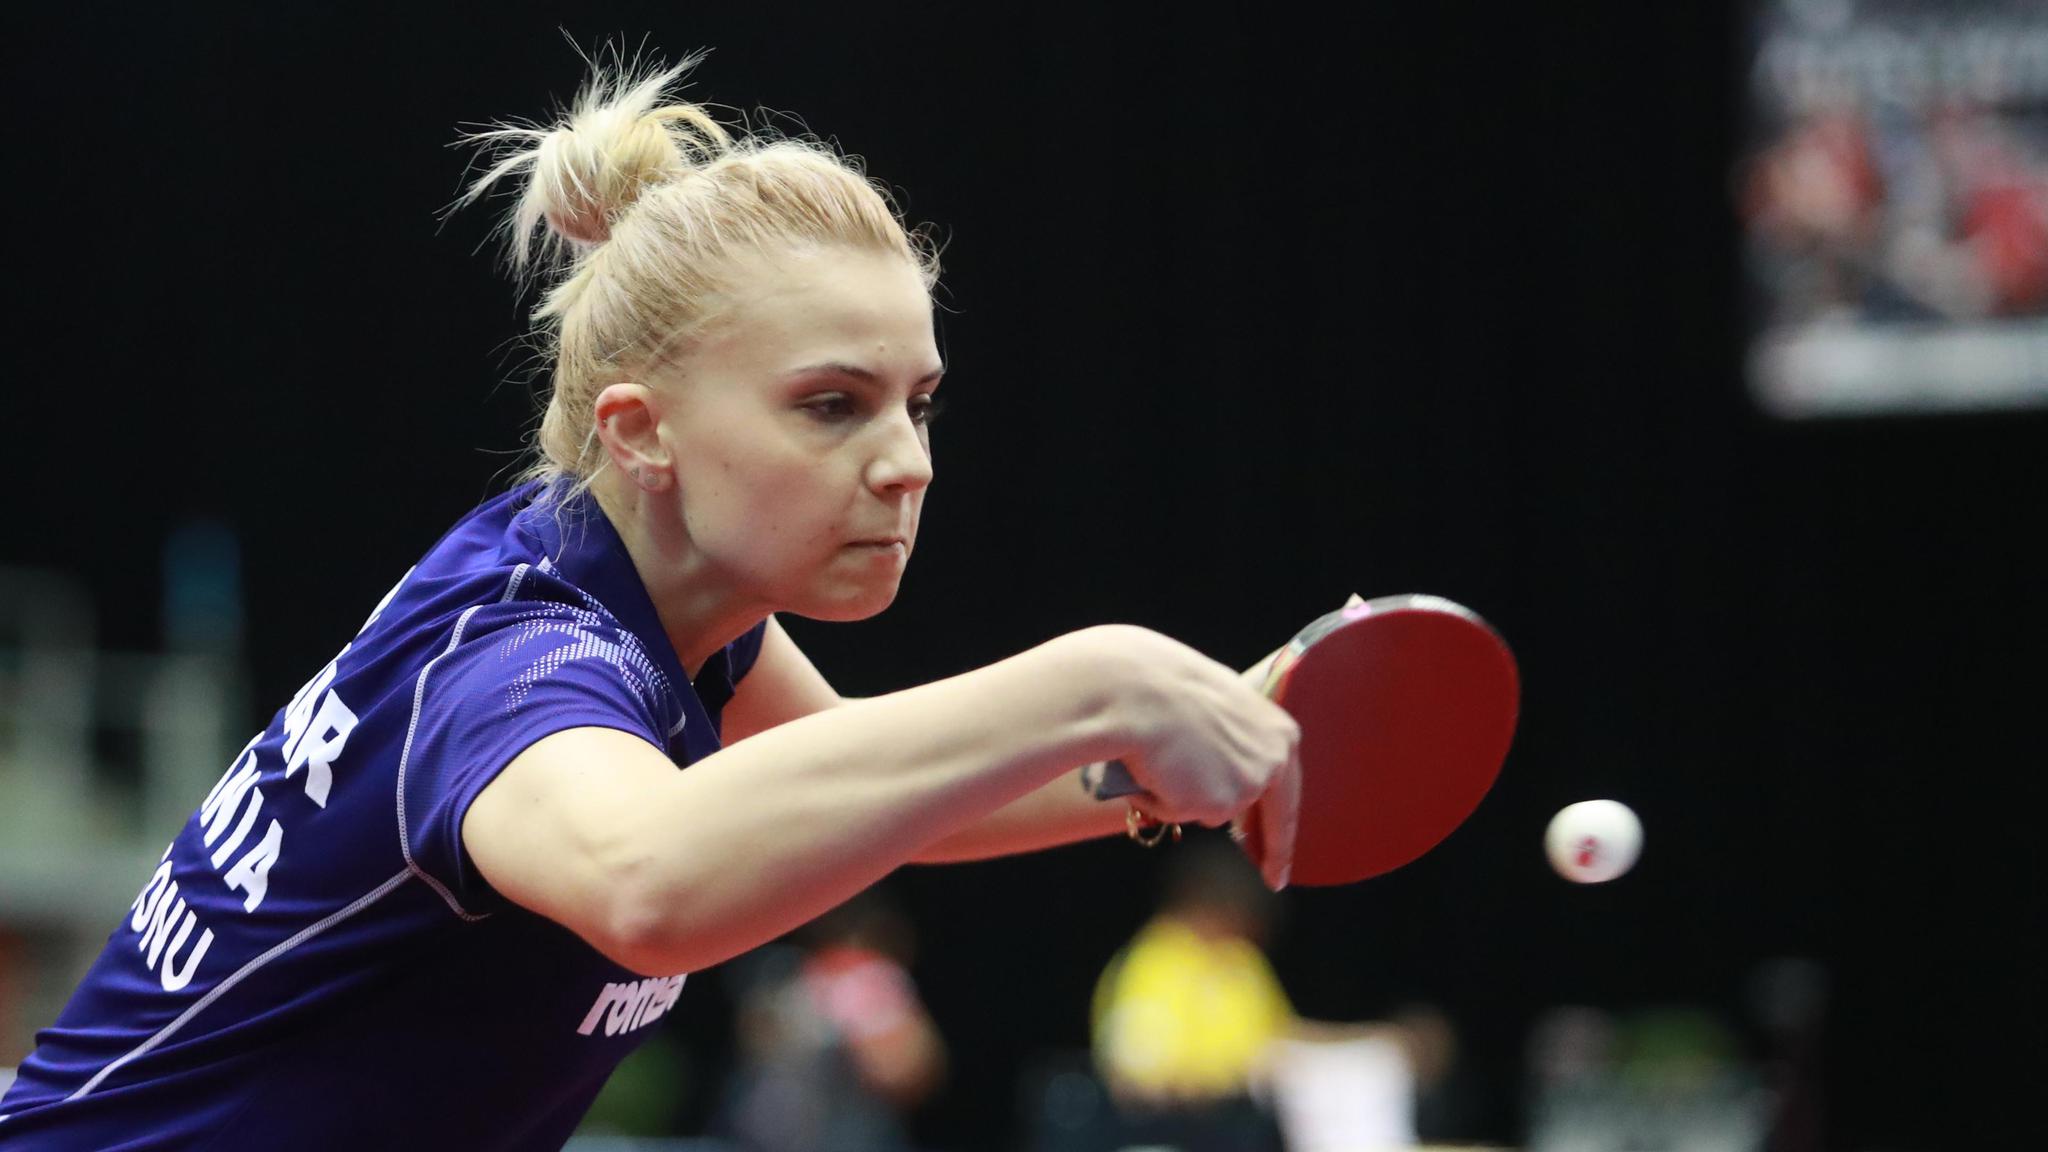 2019匈牙利乒乓球公开赛开赛,中国选手悉数过